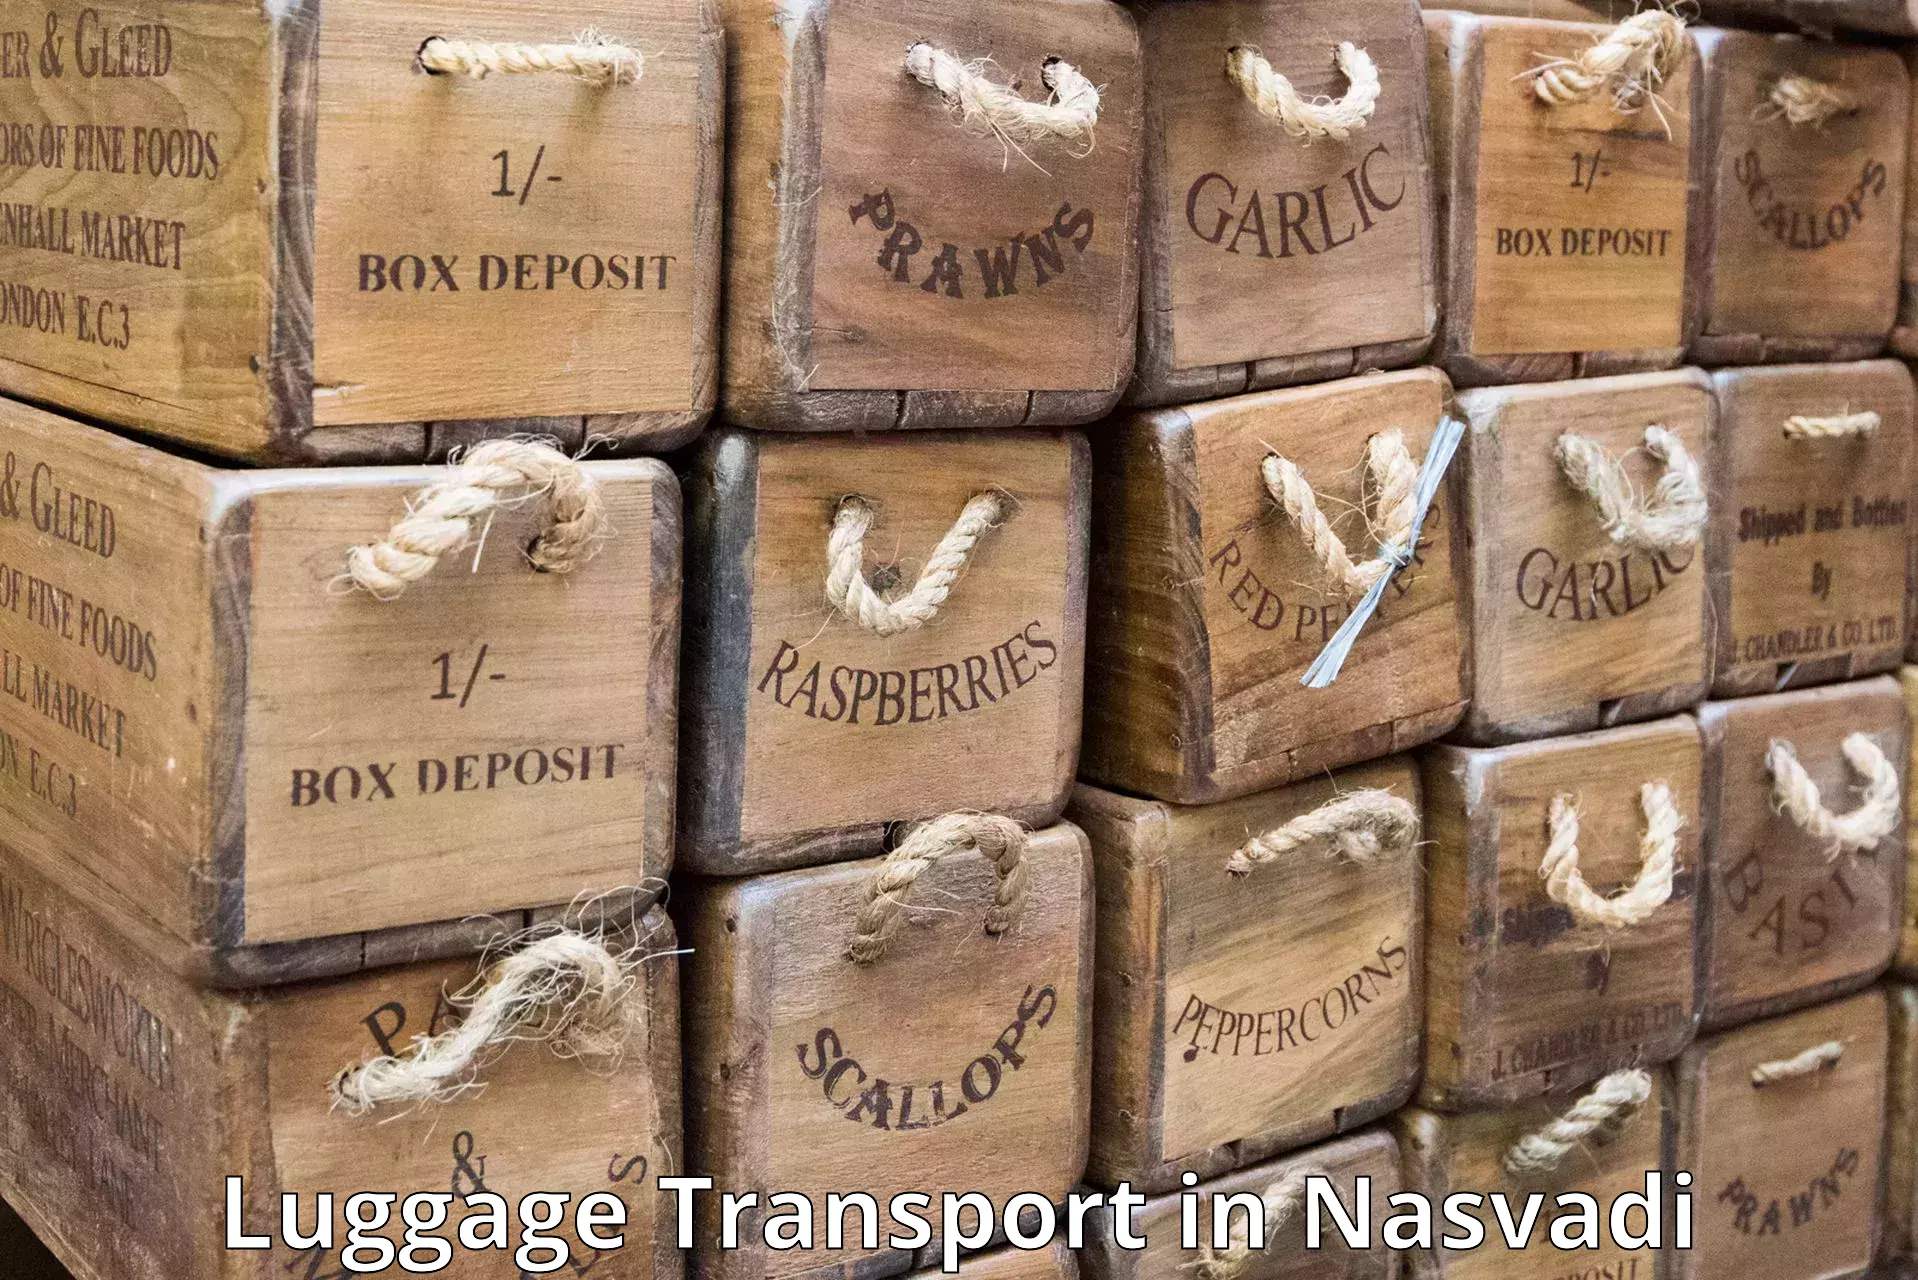 Luggage delivery estimate in Nasvadi